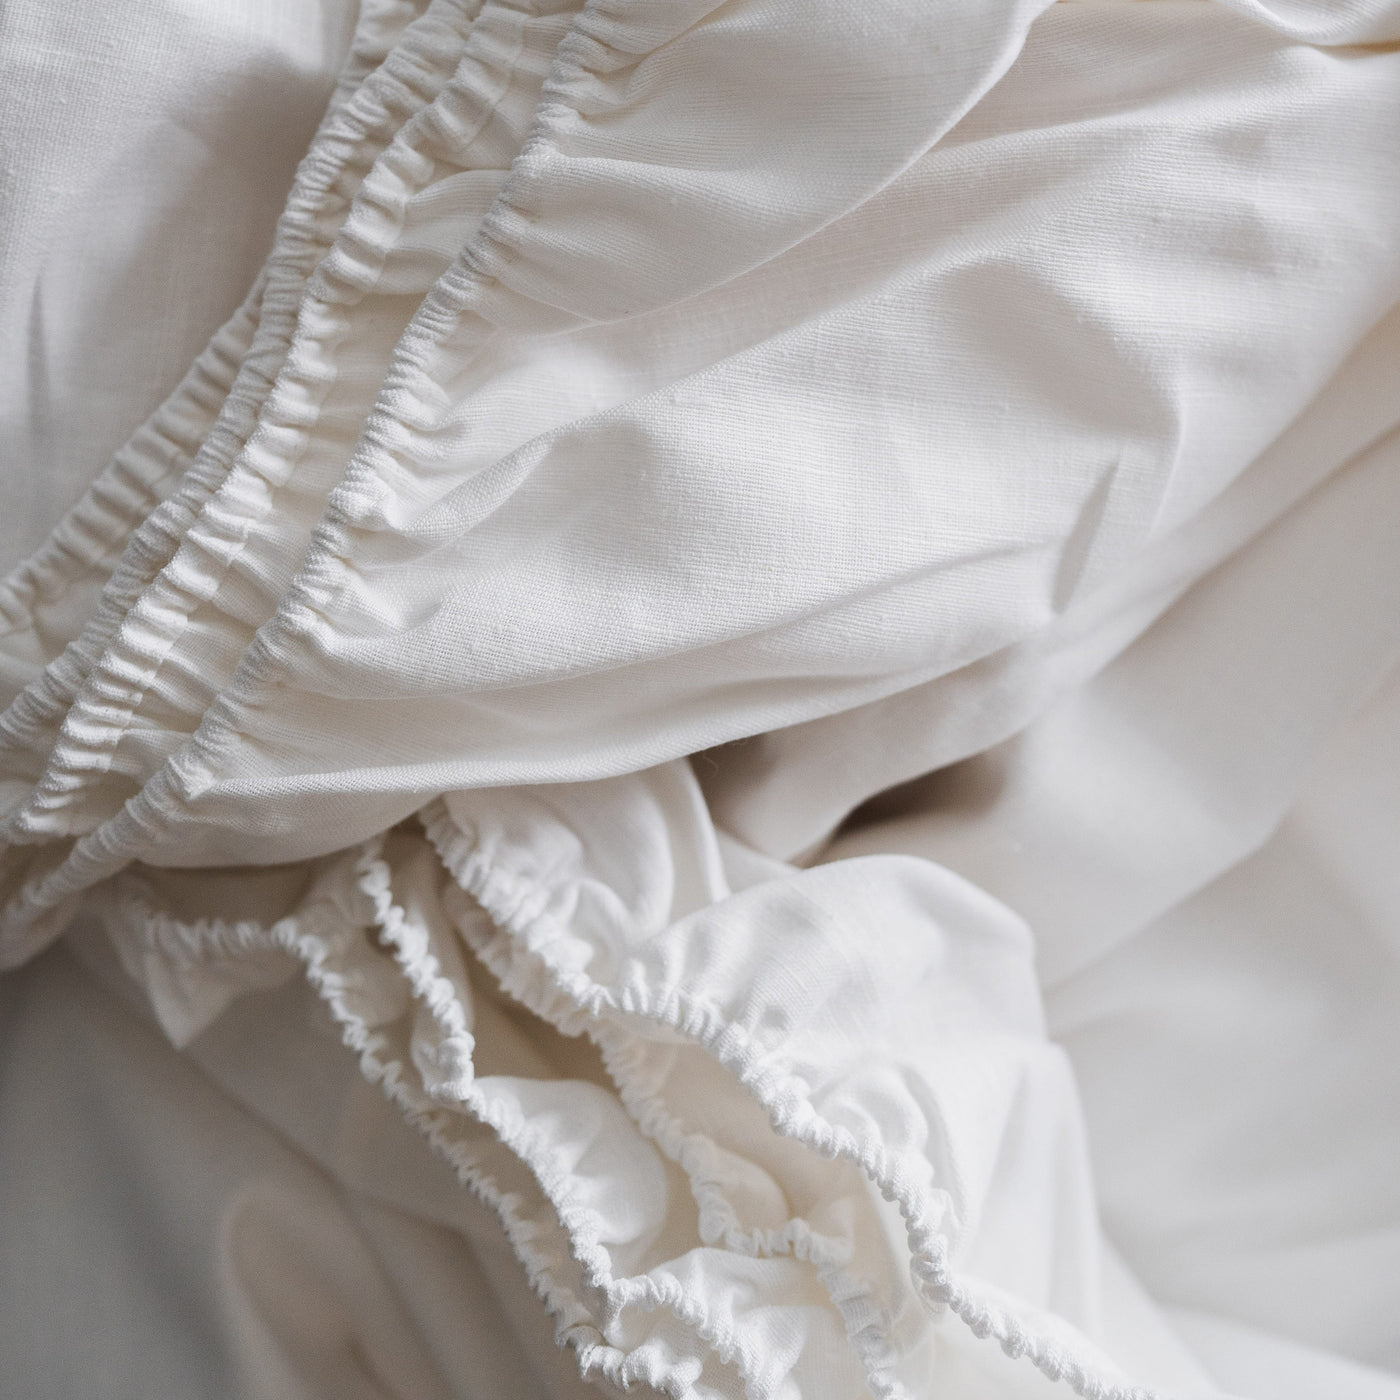 Acquista il lenzuolo matrimoniale Premium 100% lino in bianco ottico 5